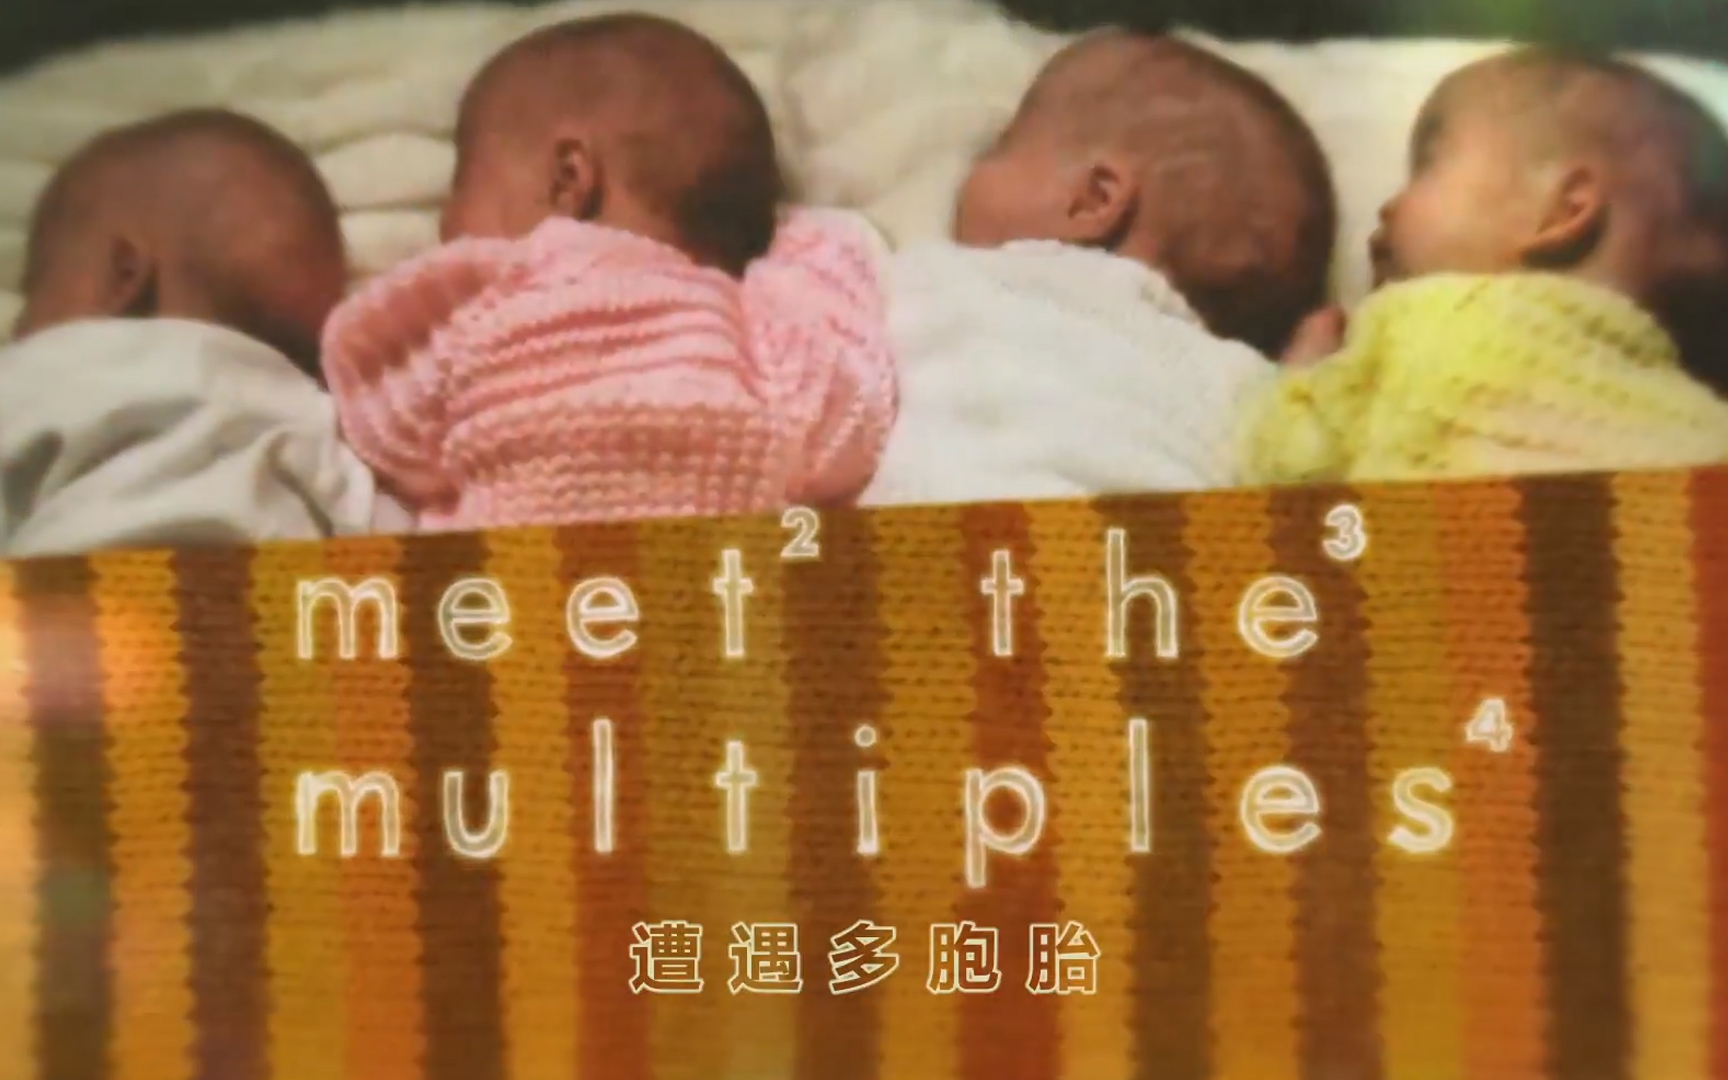 【纪录片】遭遇多胞胎-Meet the Multiples